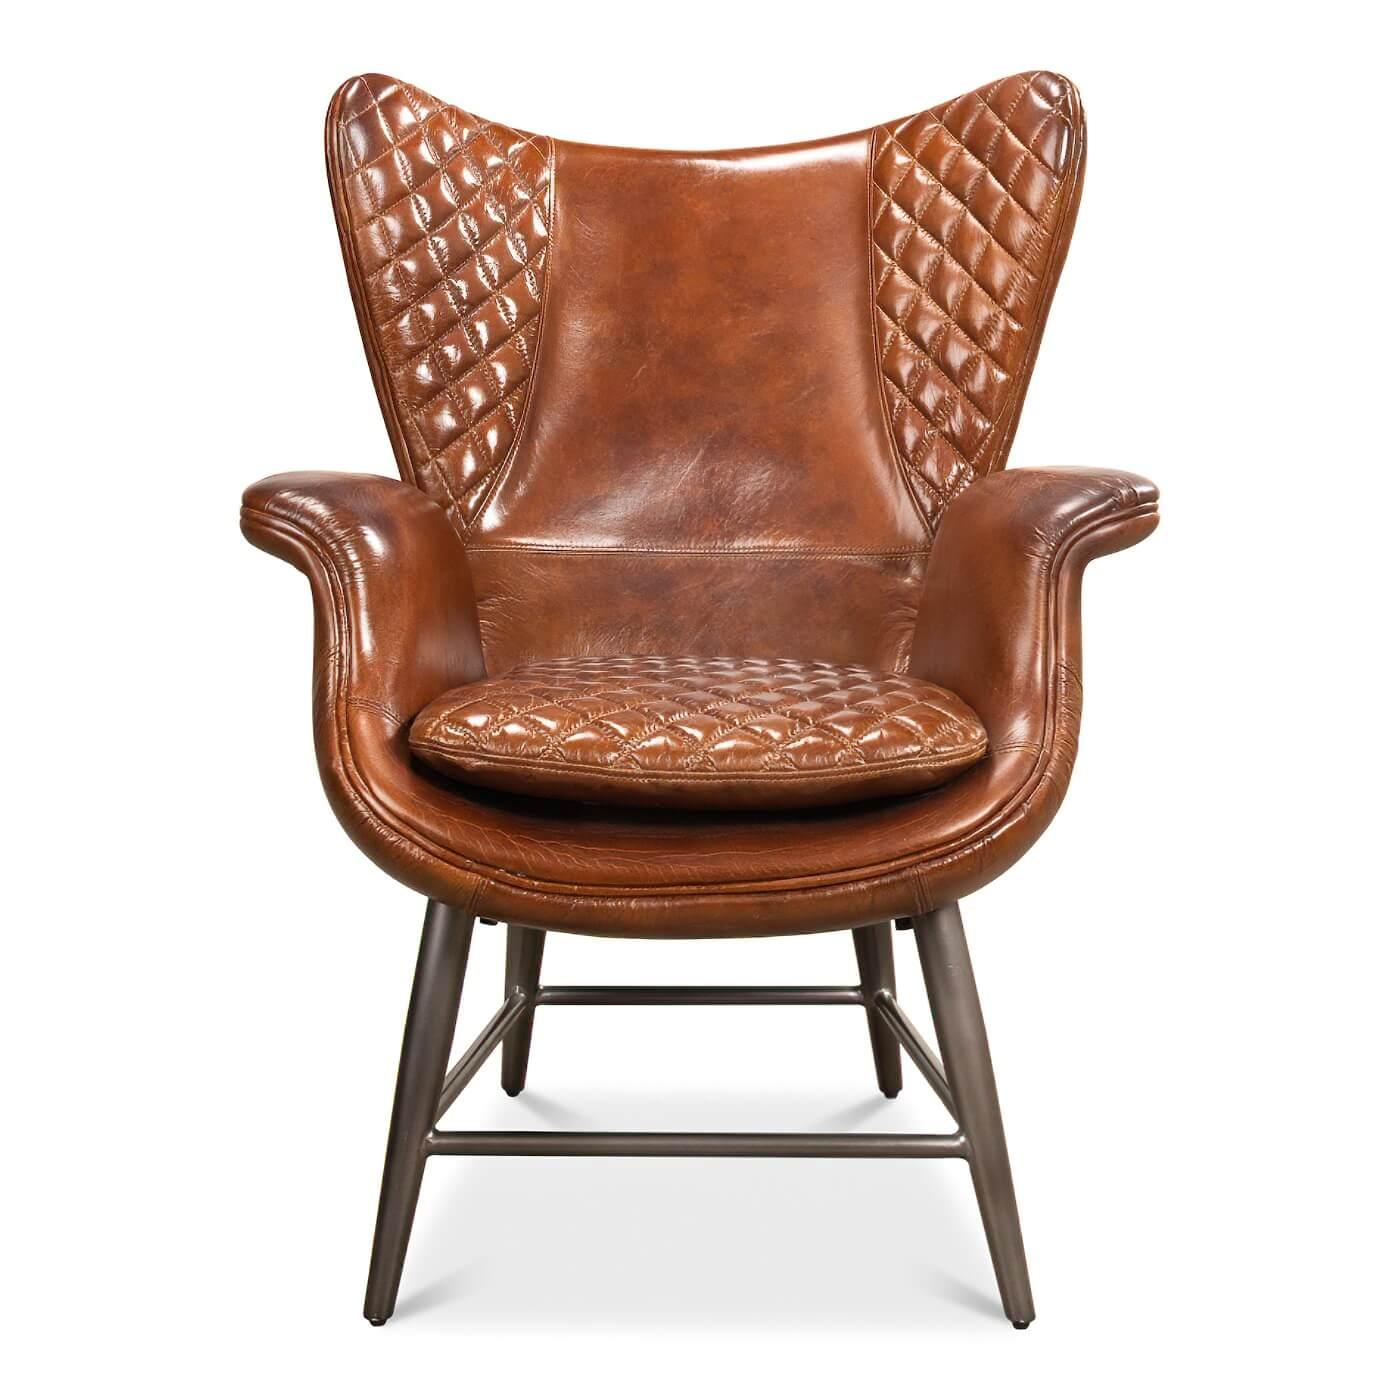 Ein moderner gesteppter brauner Ledersessel mit geschwungener Rückenlehne und Armlehnen. Dieser Stuhl ist mit Steppnähten, selbstklebenden Nähten und Steppungen versehen. Er ruht auf Metallbeinen, die ihm einen Mid-Century- und Industrie-Look